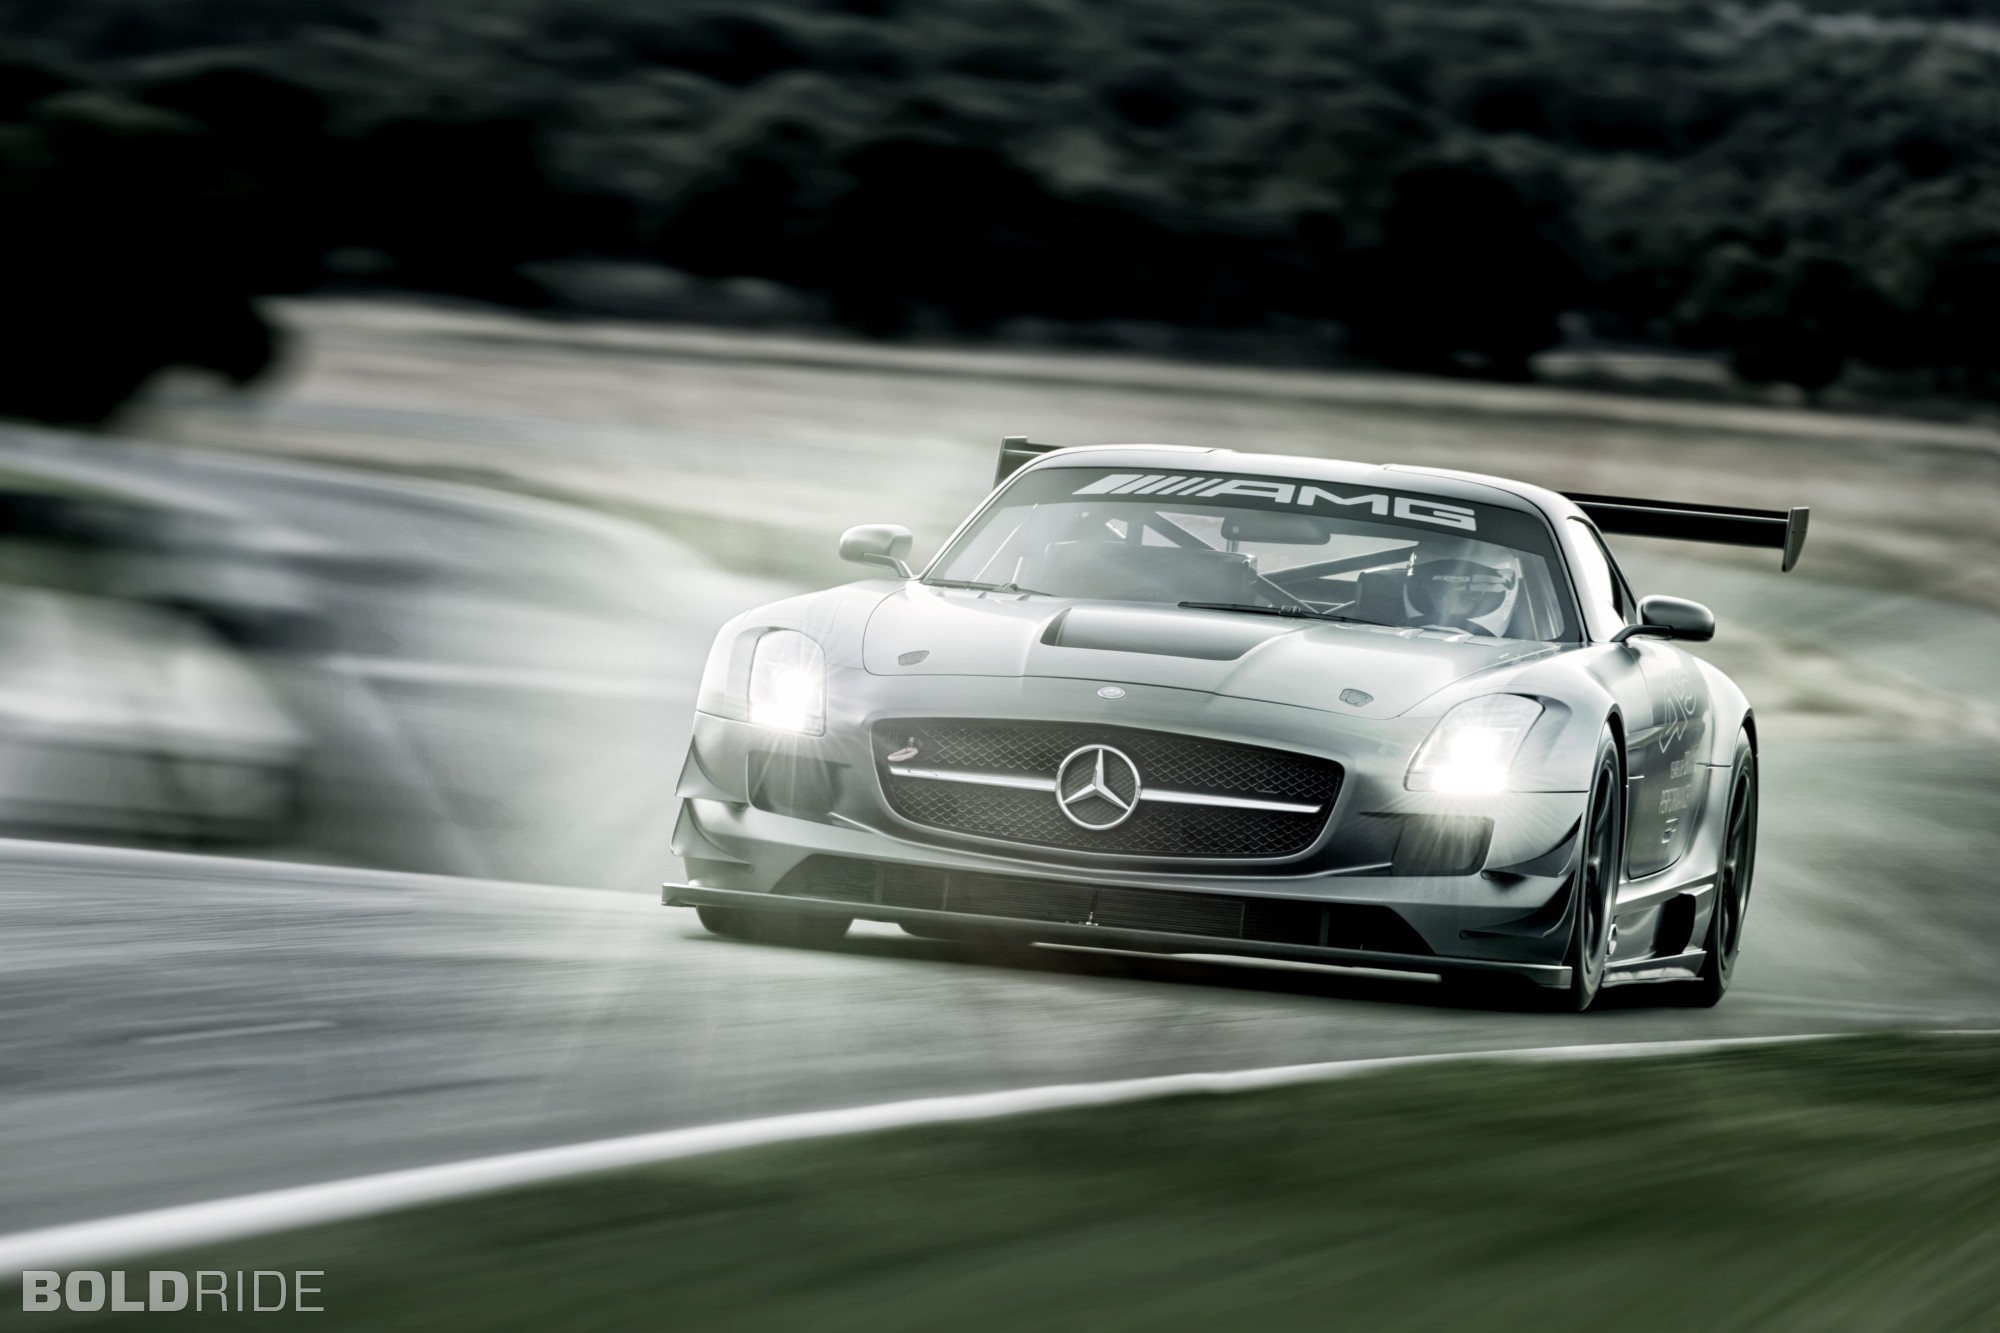 2013, Mercedes, Benz, Sls, Amg, Gt3, Race, Racing, Supercar, Ce Wallpaper